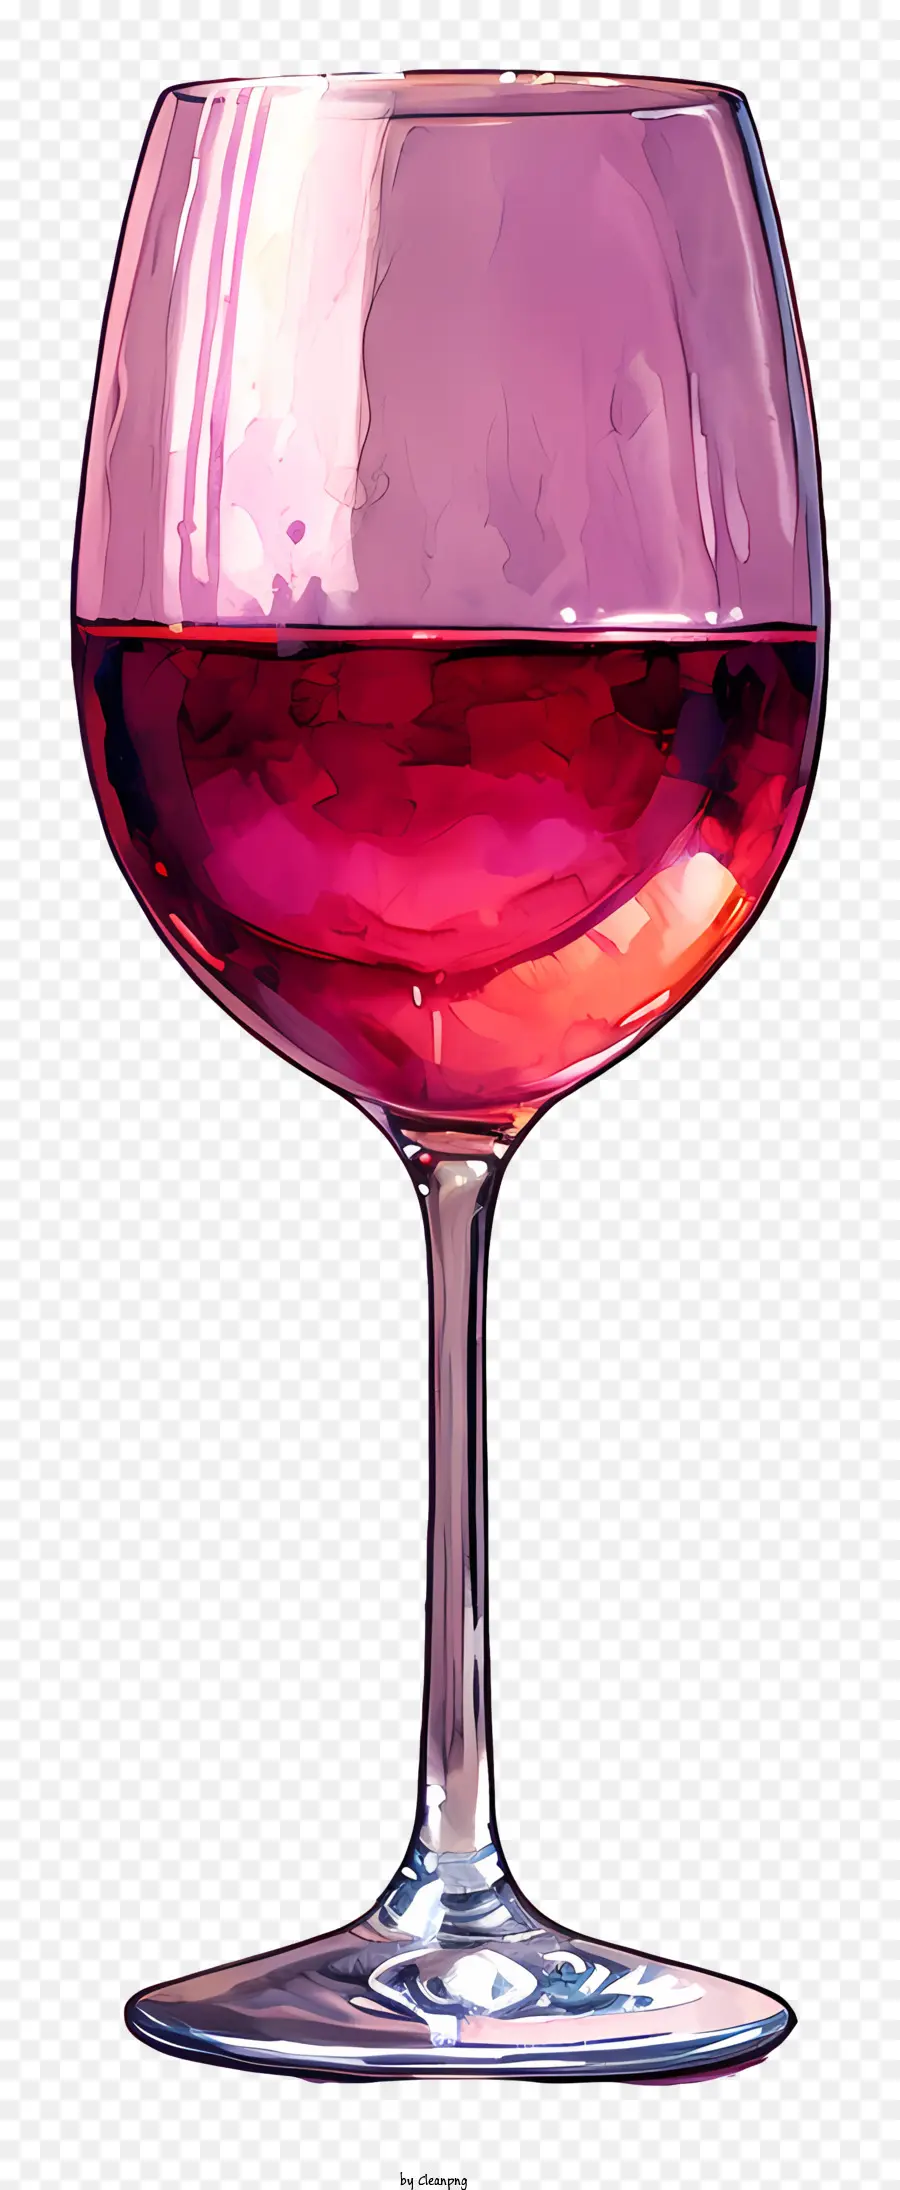 bicchiere di vino - Bicchiere di vino con vino rosa sulla superficie nera